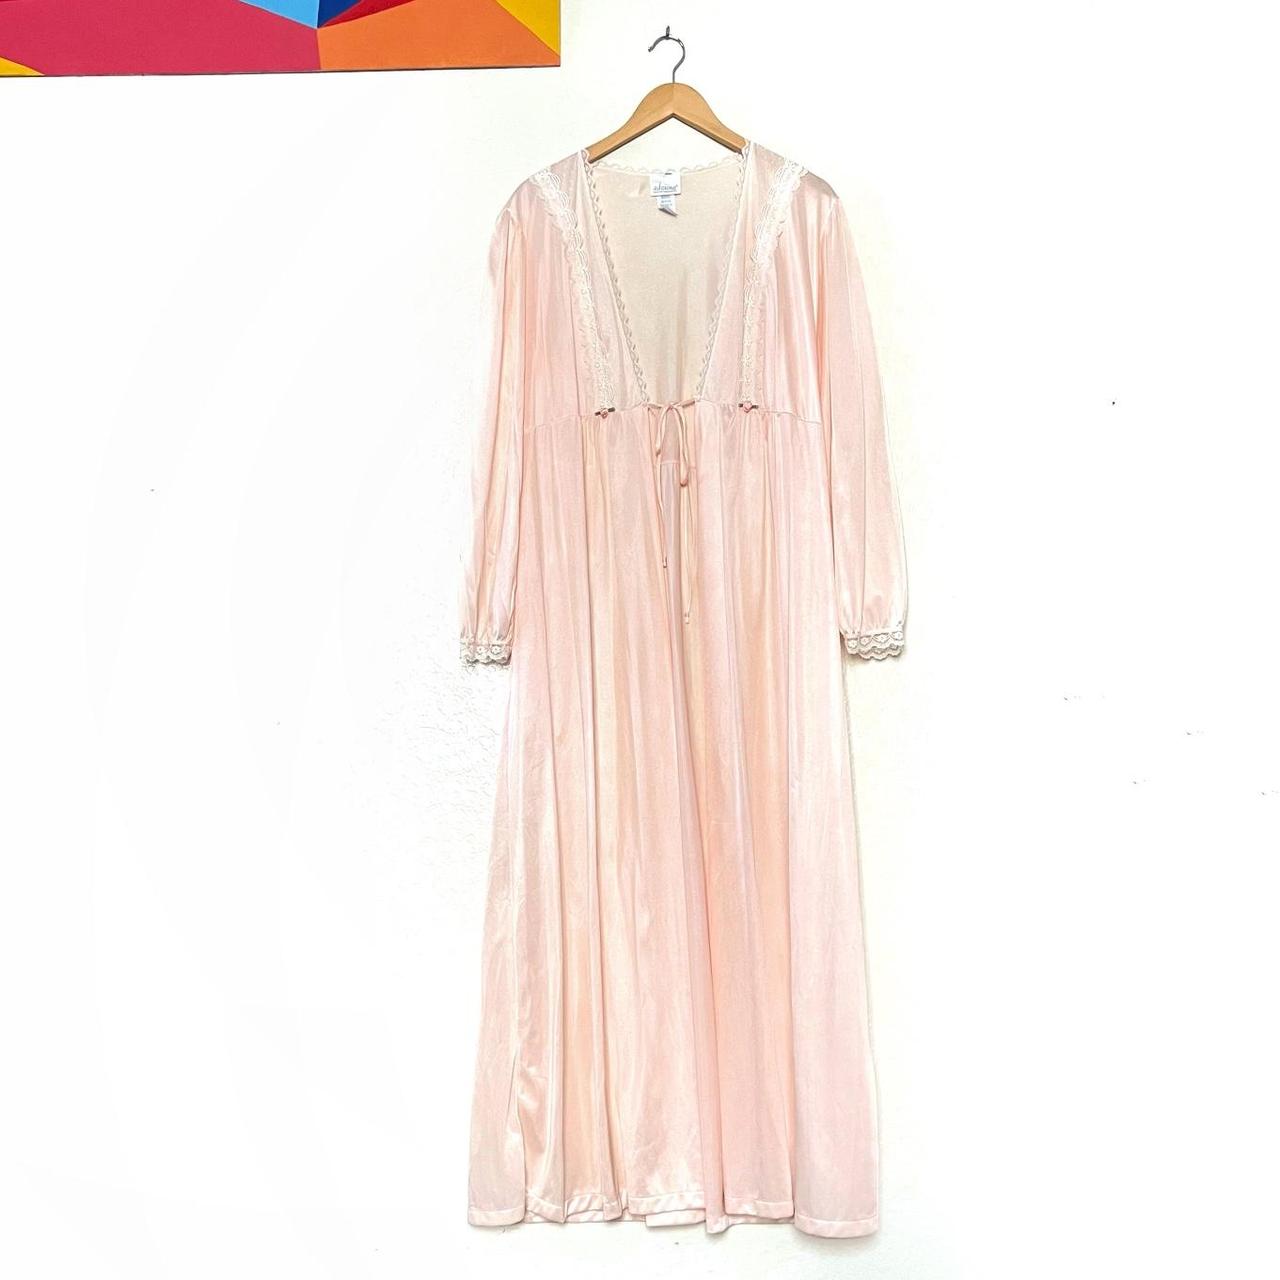 Vintage Adonna slip negligee nightgown robe dress,... - Depop